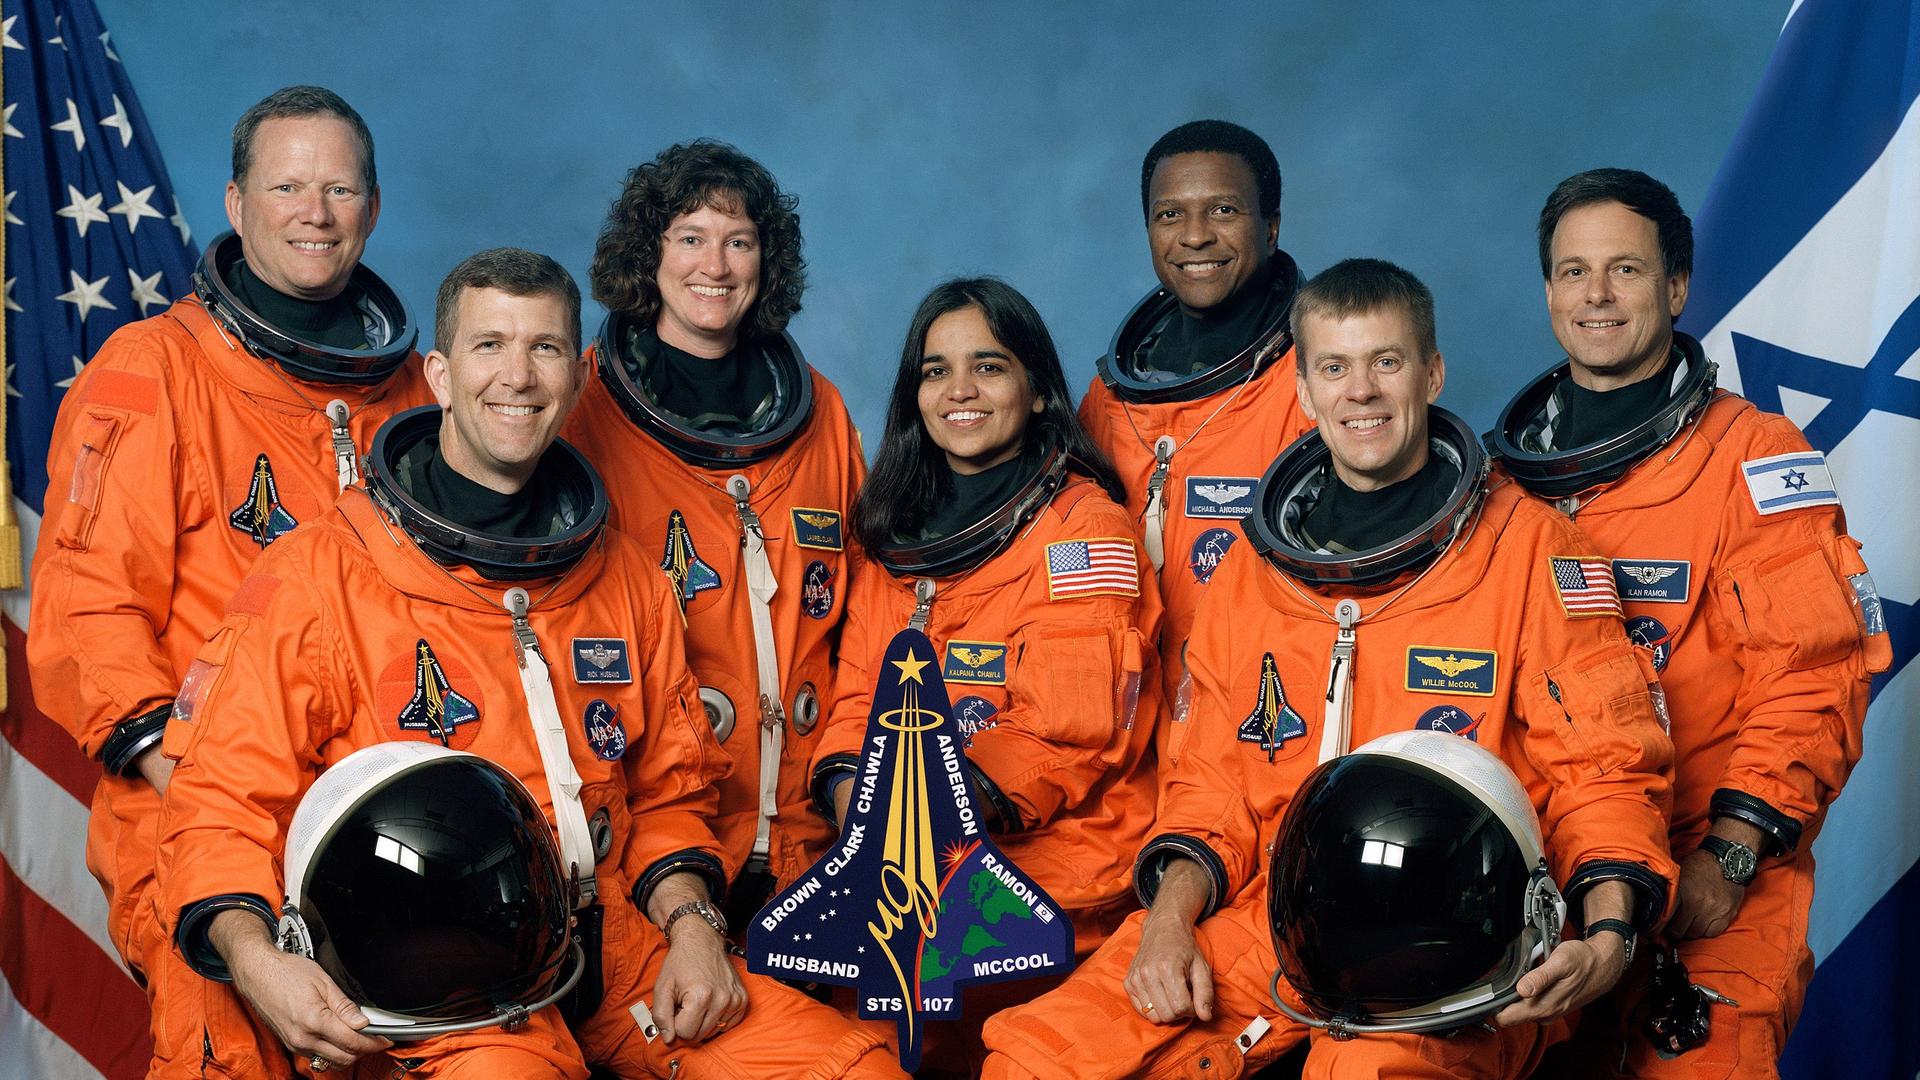 Die Besatzung der Raumfähre Columbia kam bei der Rückkehr zur Erde am 01. Februar 2003 ums Leben.